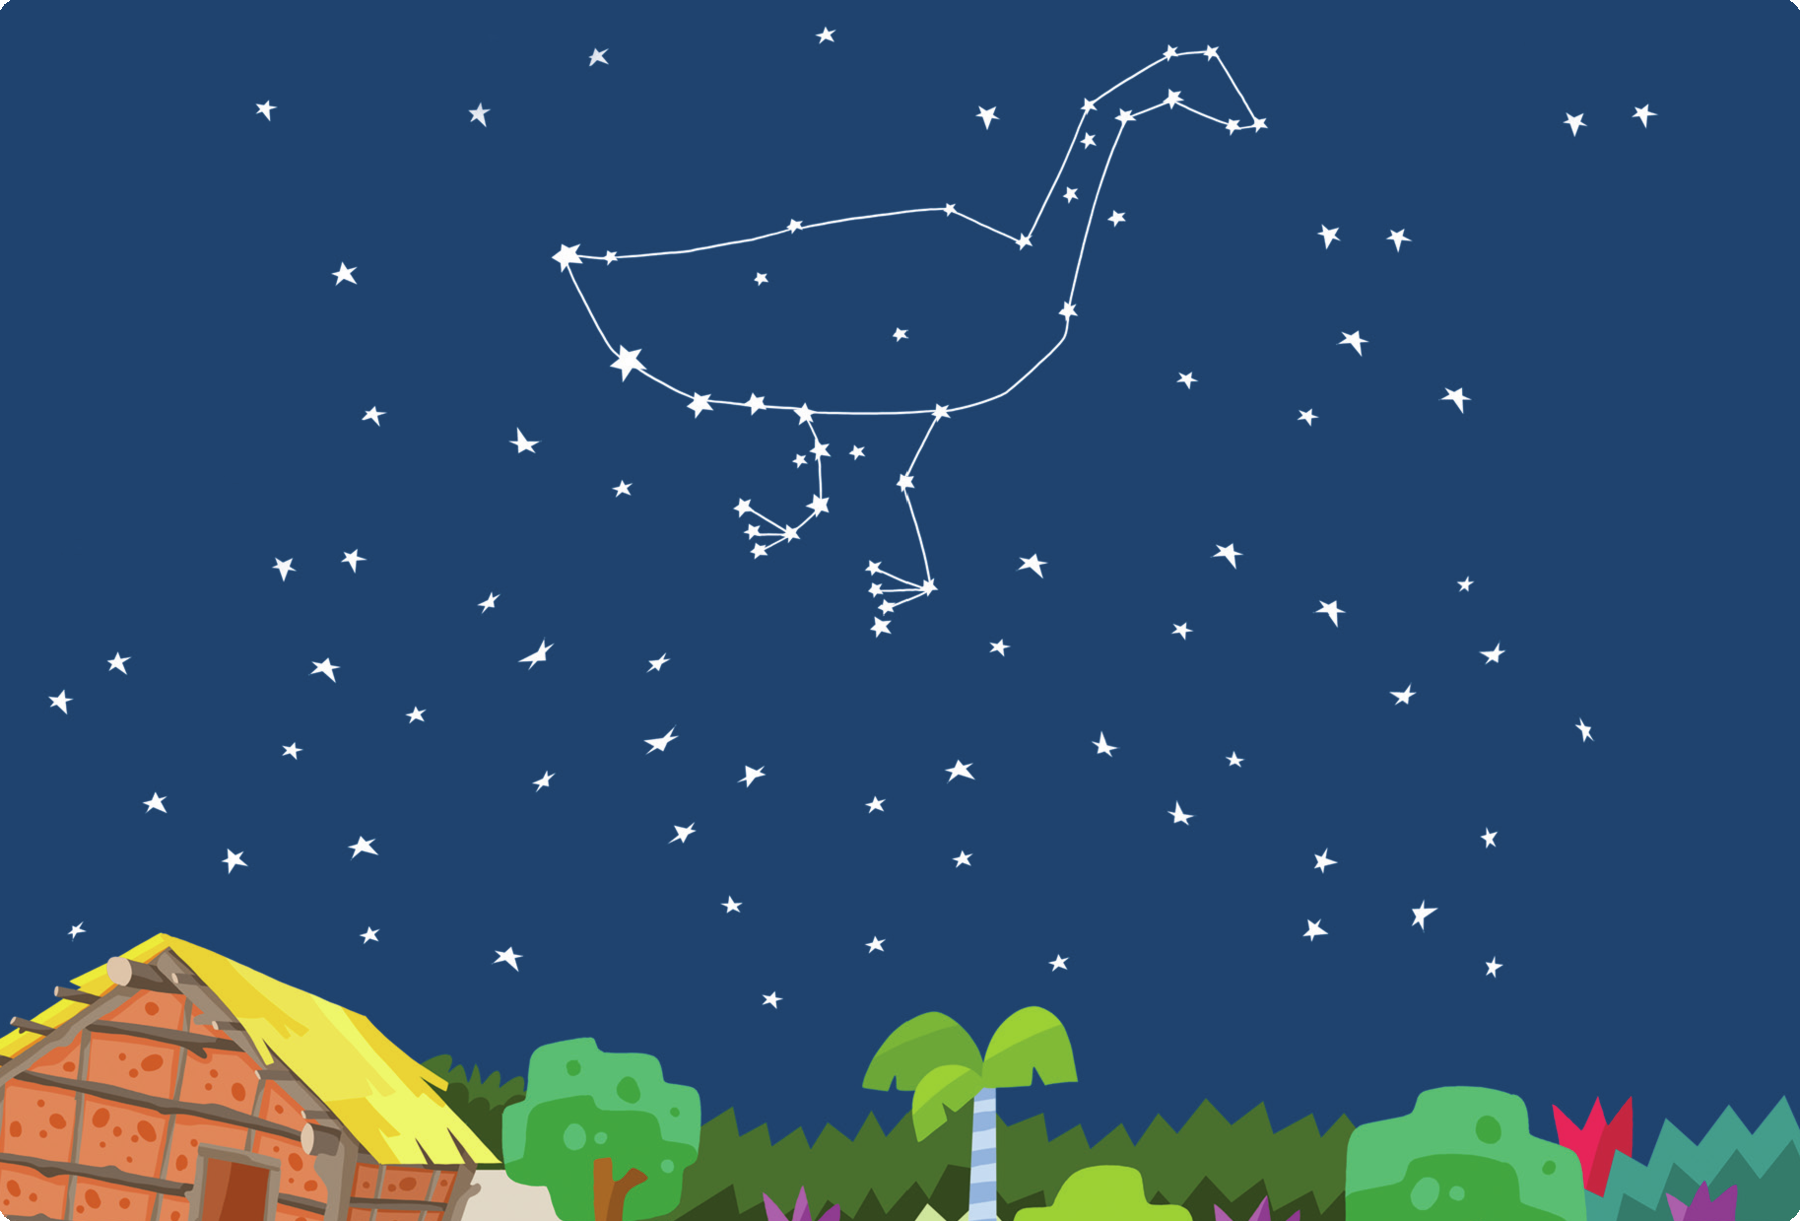 Ilustração. Céu com muitas estrelas, entre elas, há o desenho de uma ema. Abaixo, telhados de moradias indígenas.